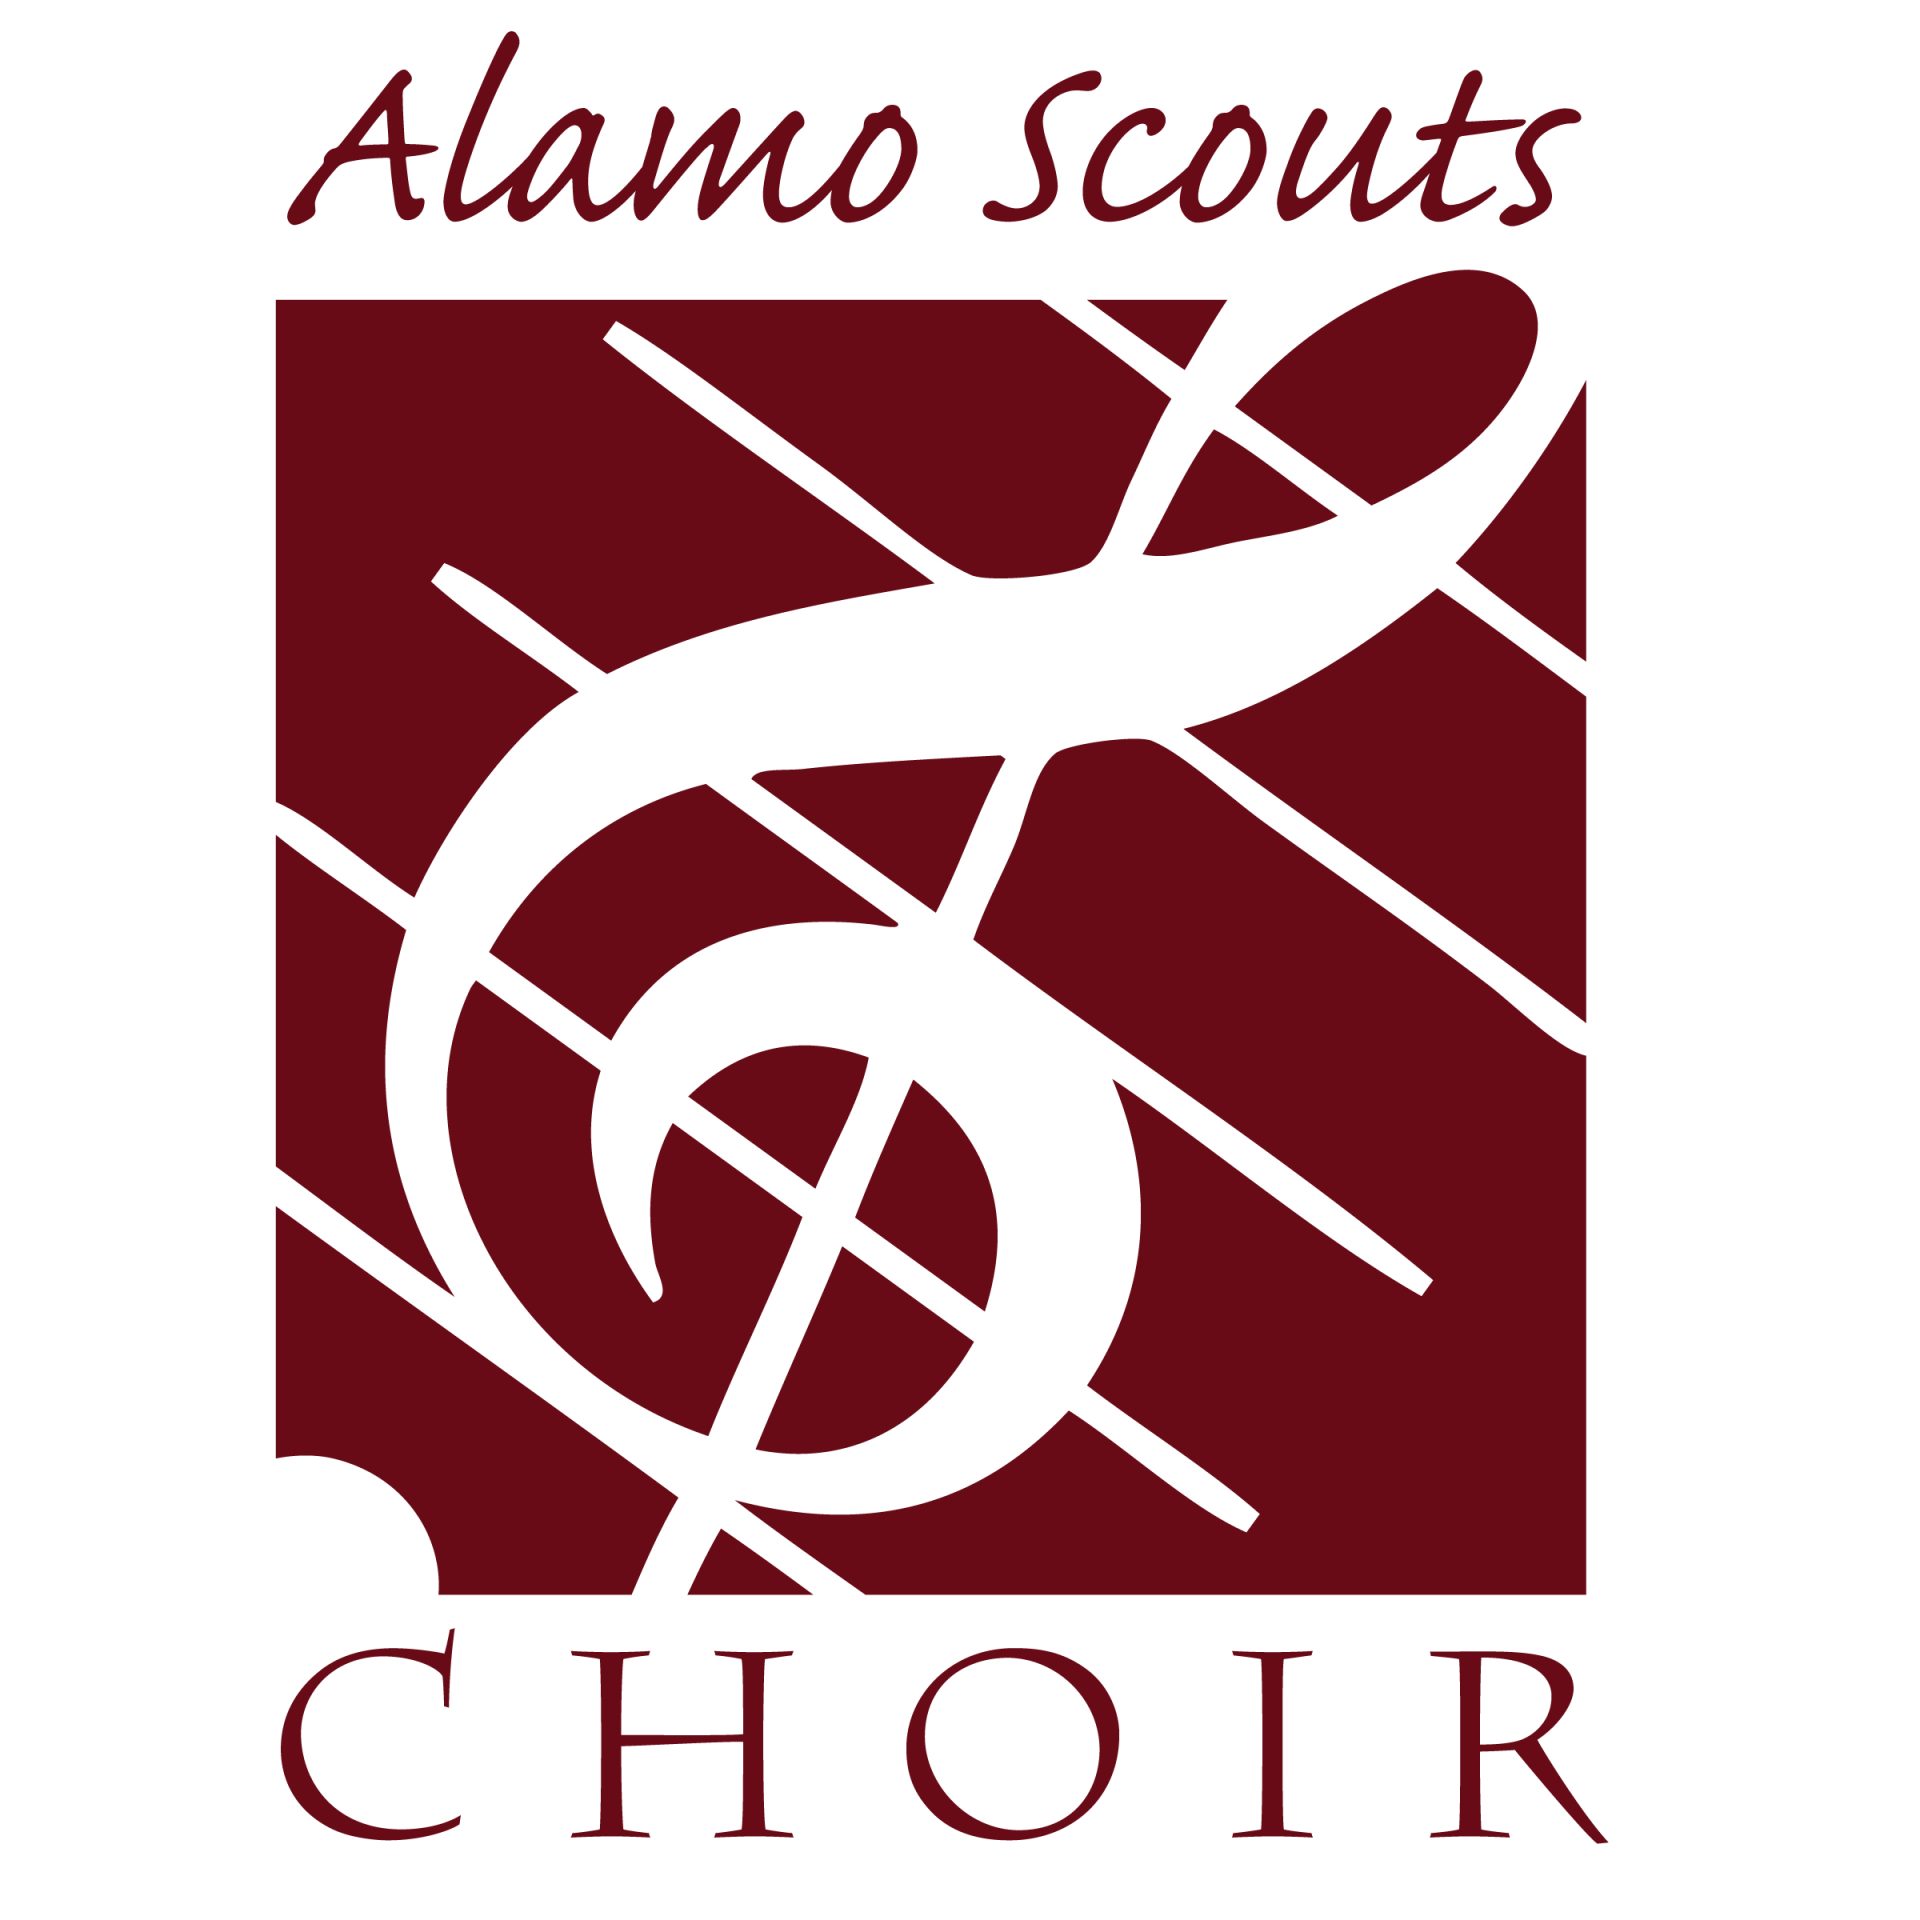 choir logo ideas 2